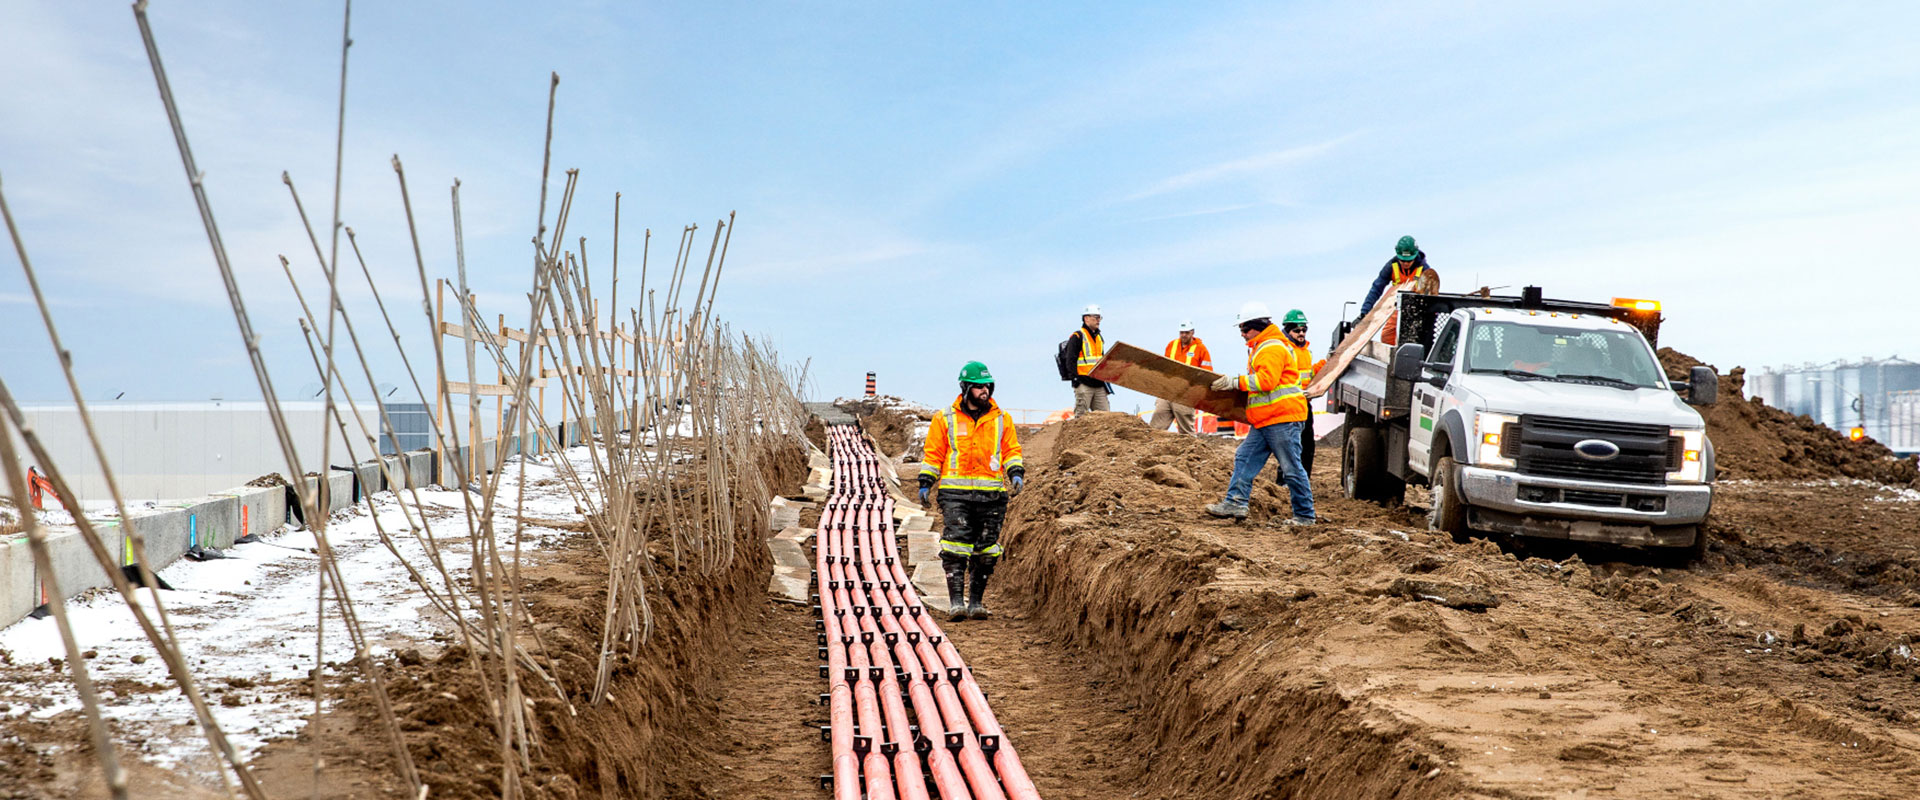 Une équipe de travailleurs de la construction de B&M met en œuvre un projet de câblage optique souterrain